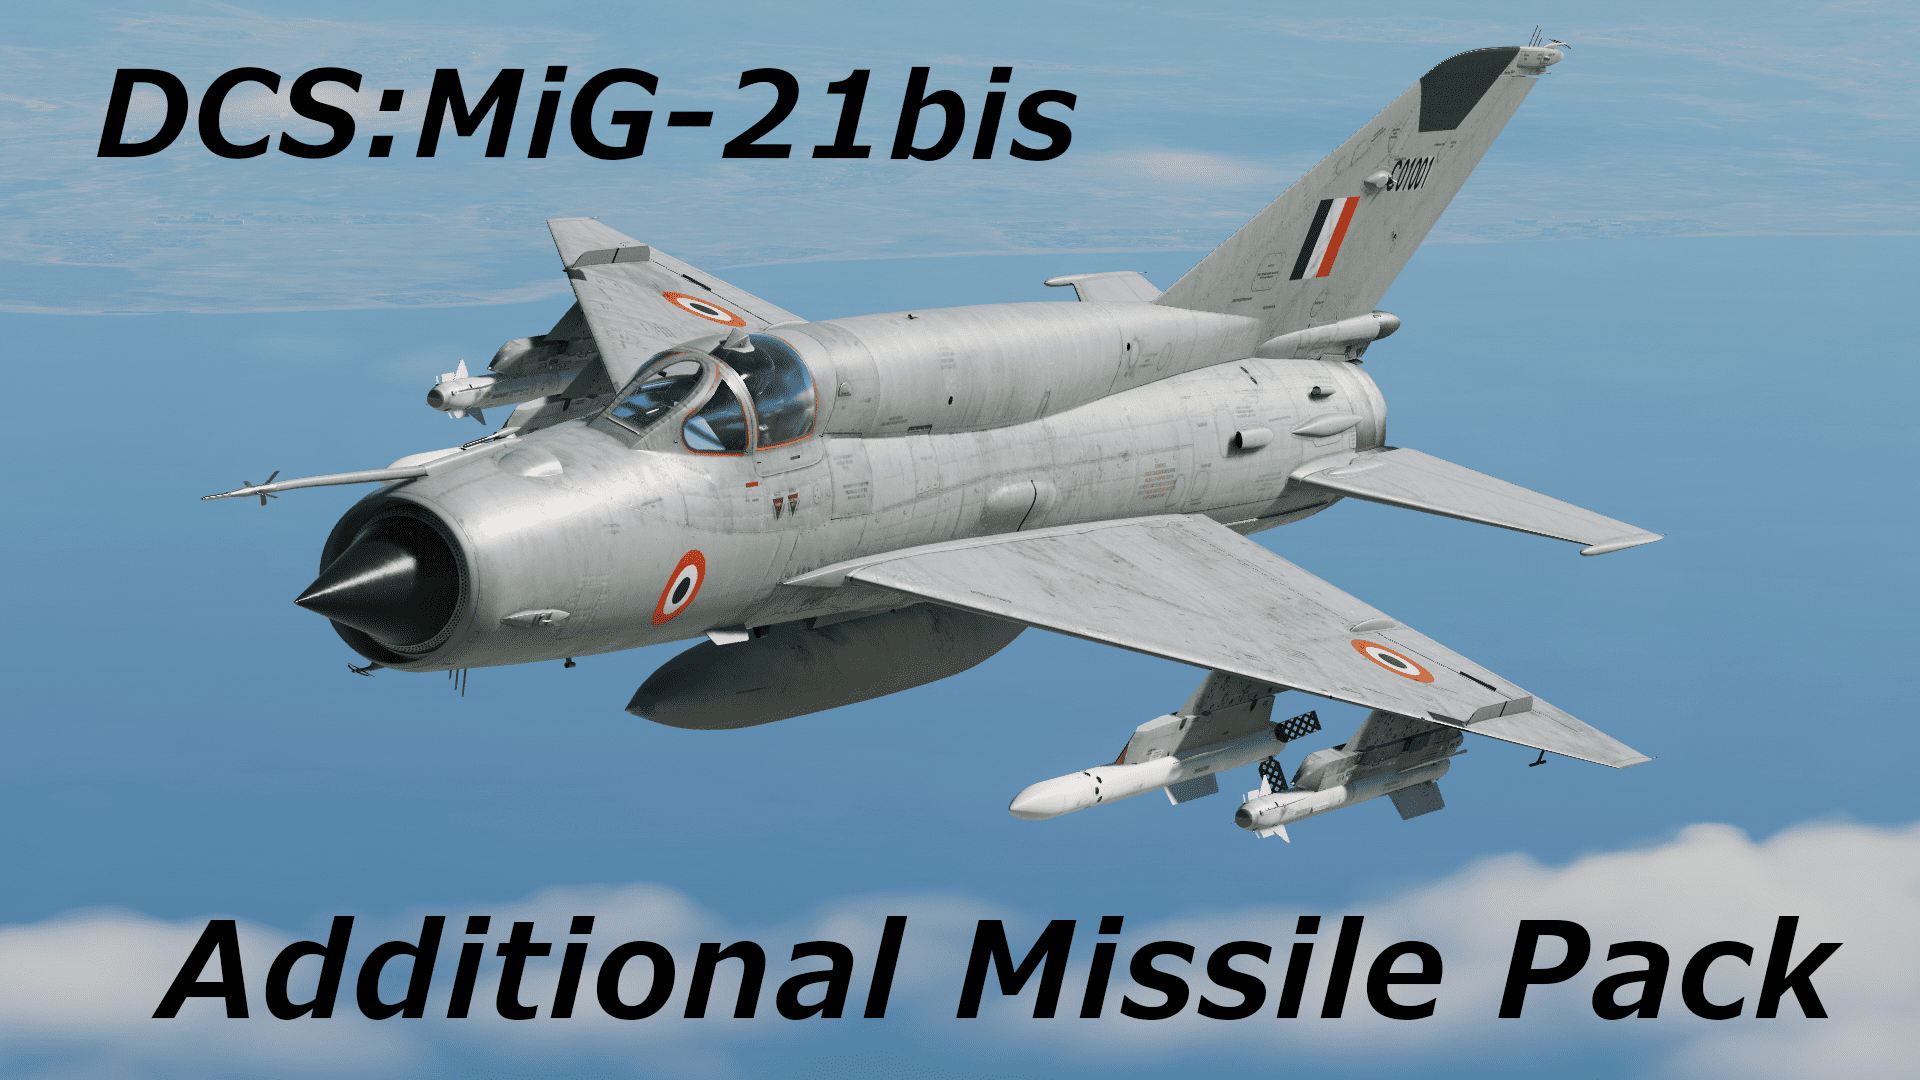 MiG-21bis Additional Missile Pack